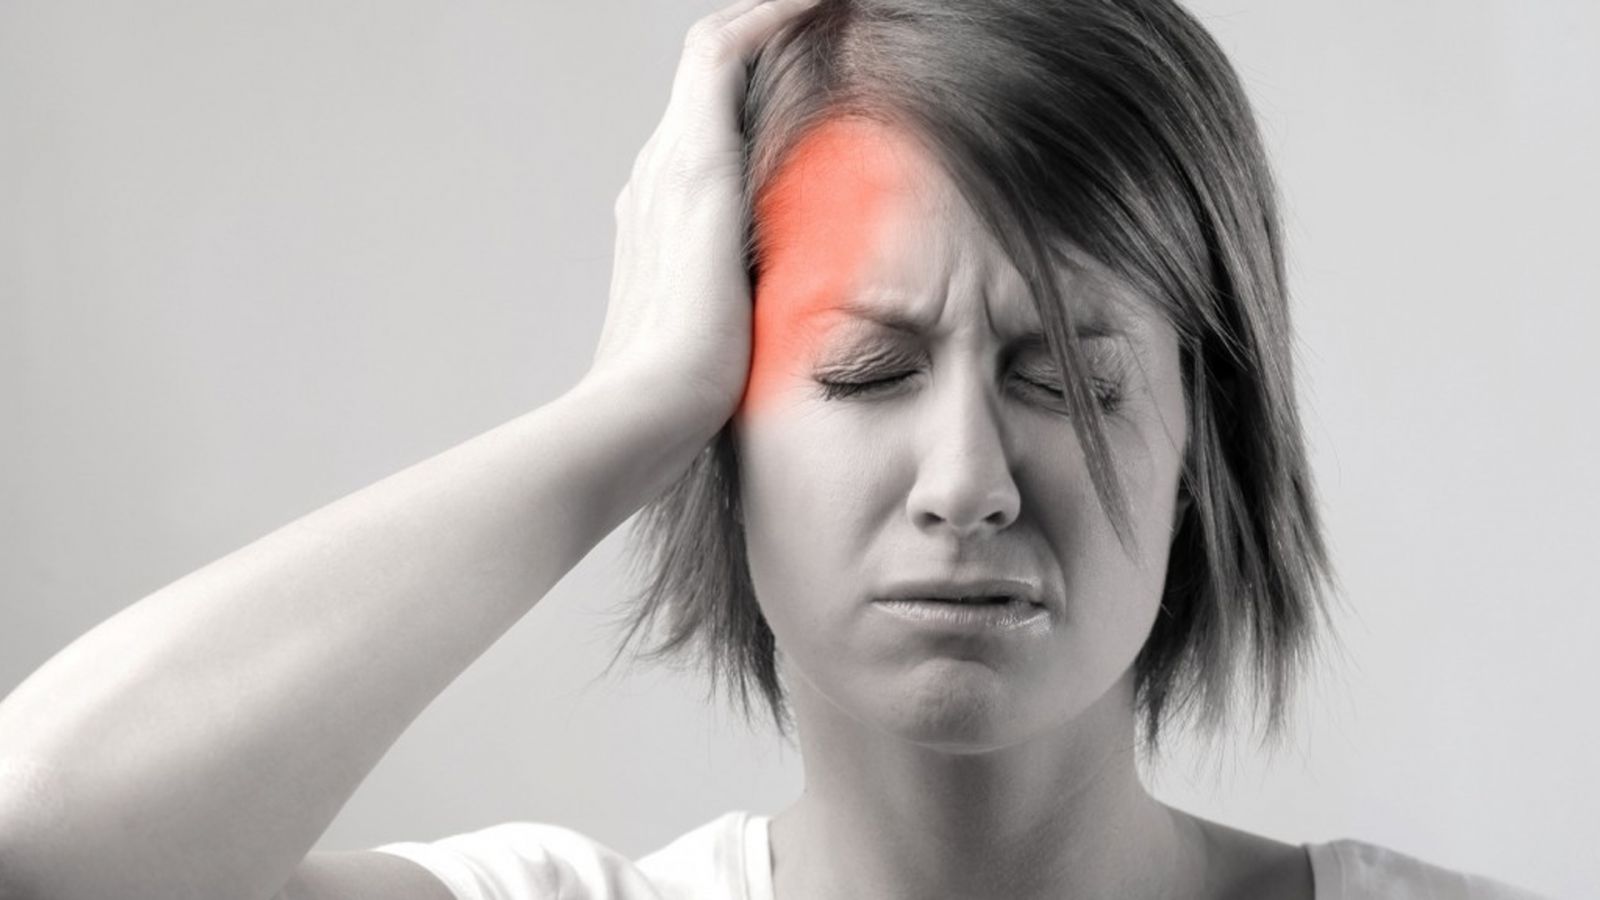 Người bệnh máu nhiễm mỡ thường cảm thấy đau đầu, chóng mặt, mệt mỏi